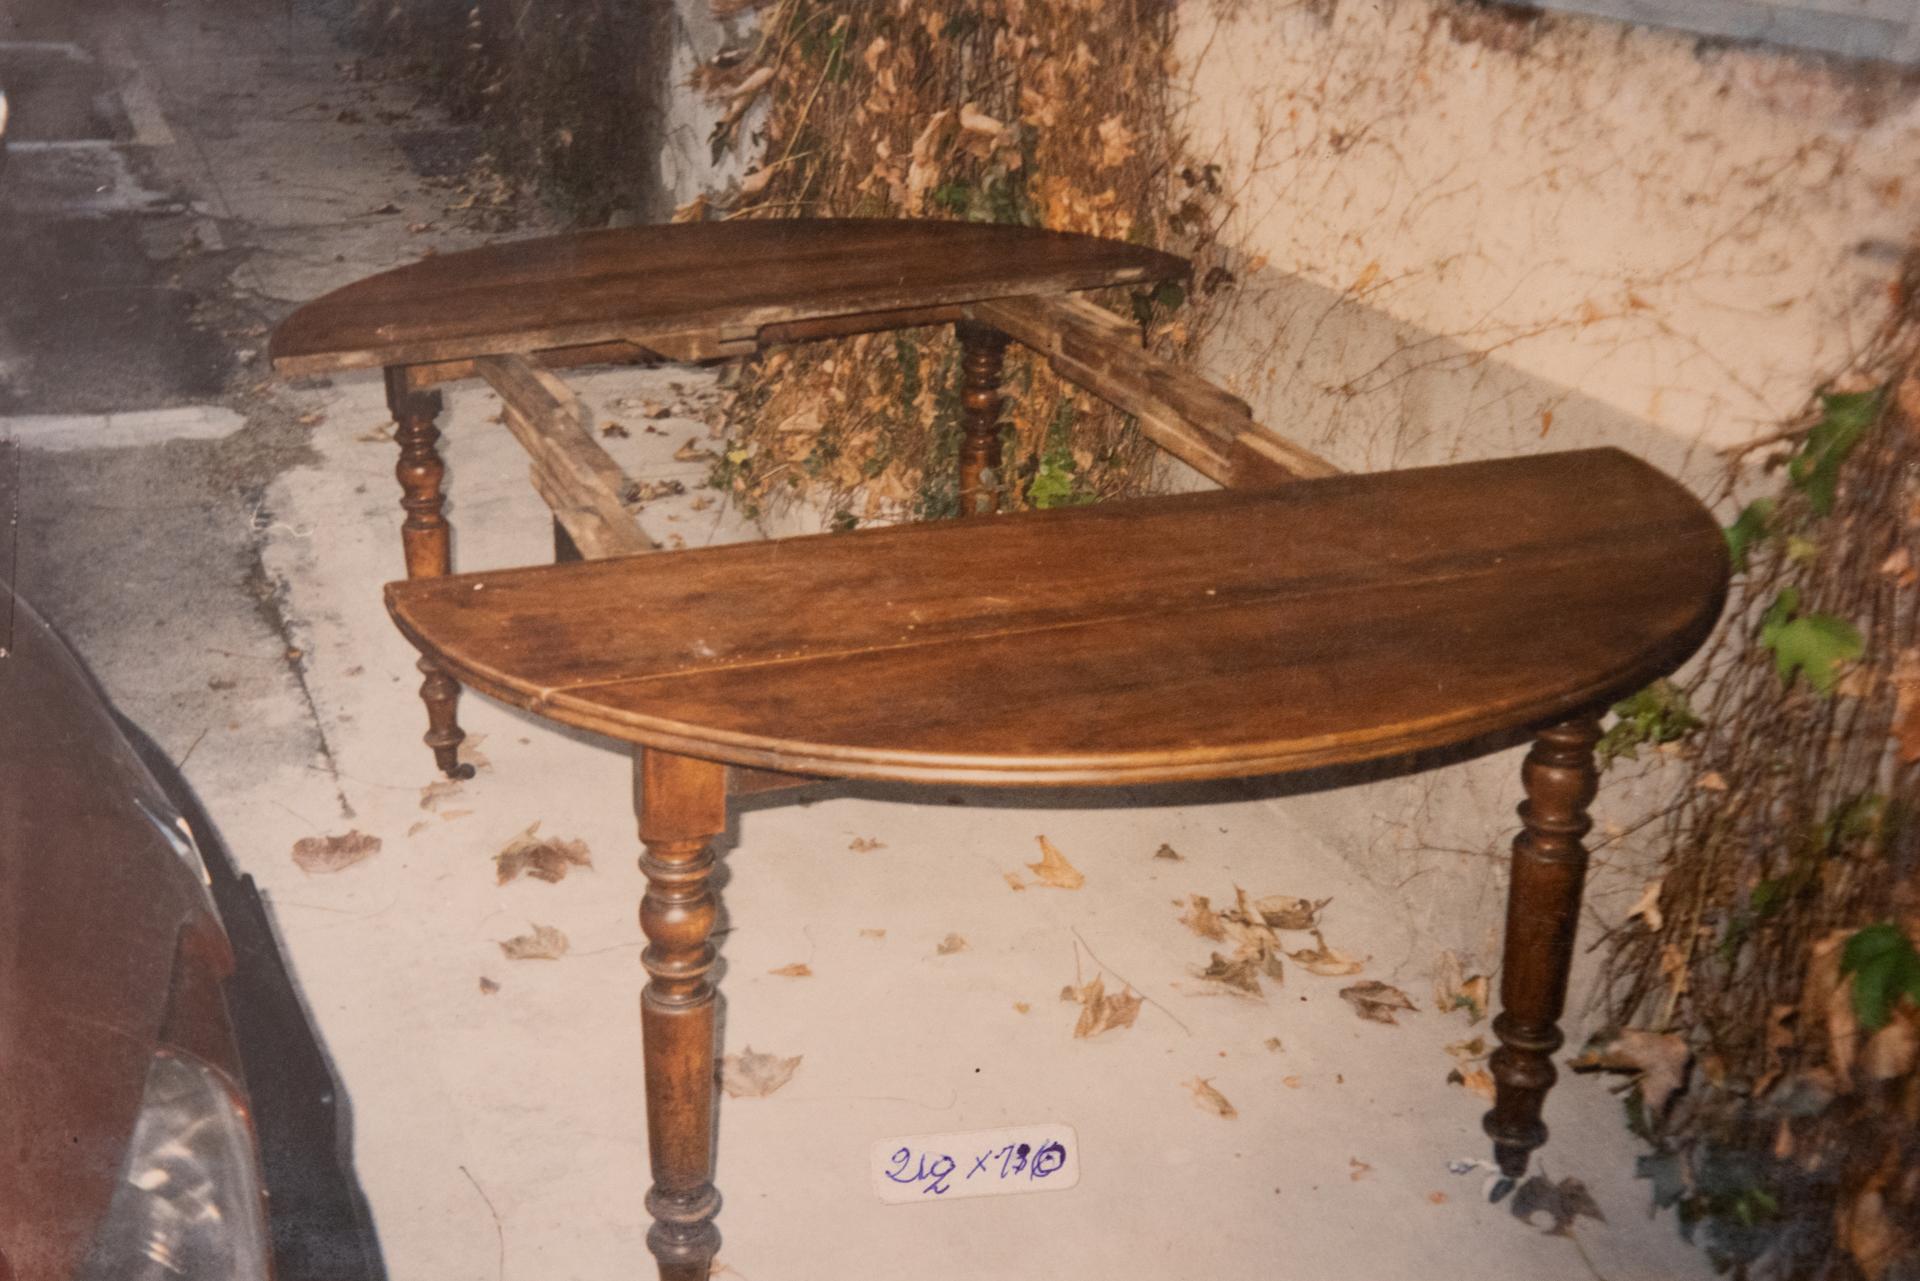 M/1329 - Antiker ovaler ausziehbarer Tisch mit Rädern. Es kann auf viele Arten verwendet werden:
als Konsole geschlossen;  auf einer Seite öffnen, wenn wenig Platz vorhanden ist und Sie nicht alles öffnen müssen.  
Wenn es auf beiden Seiten